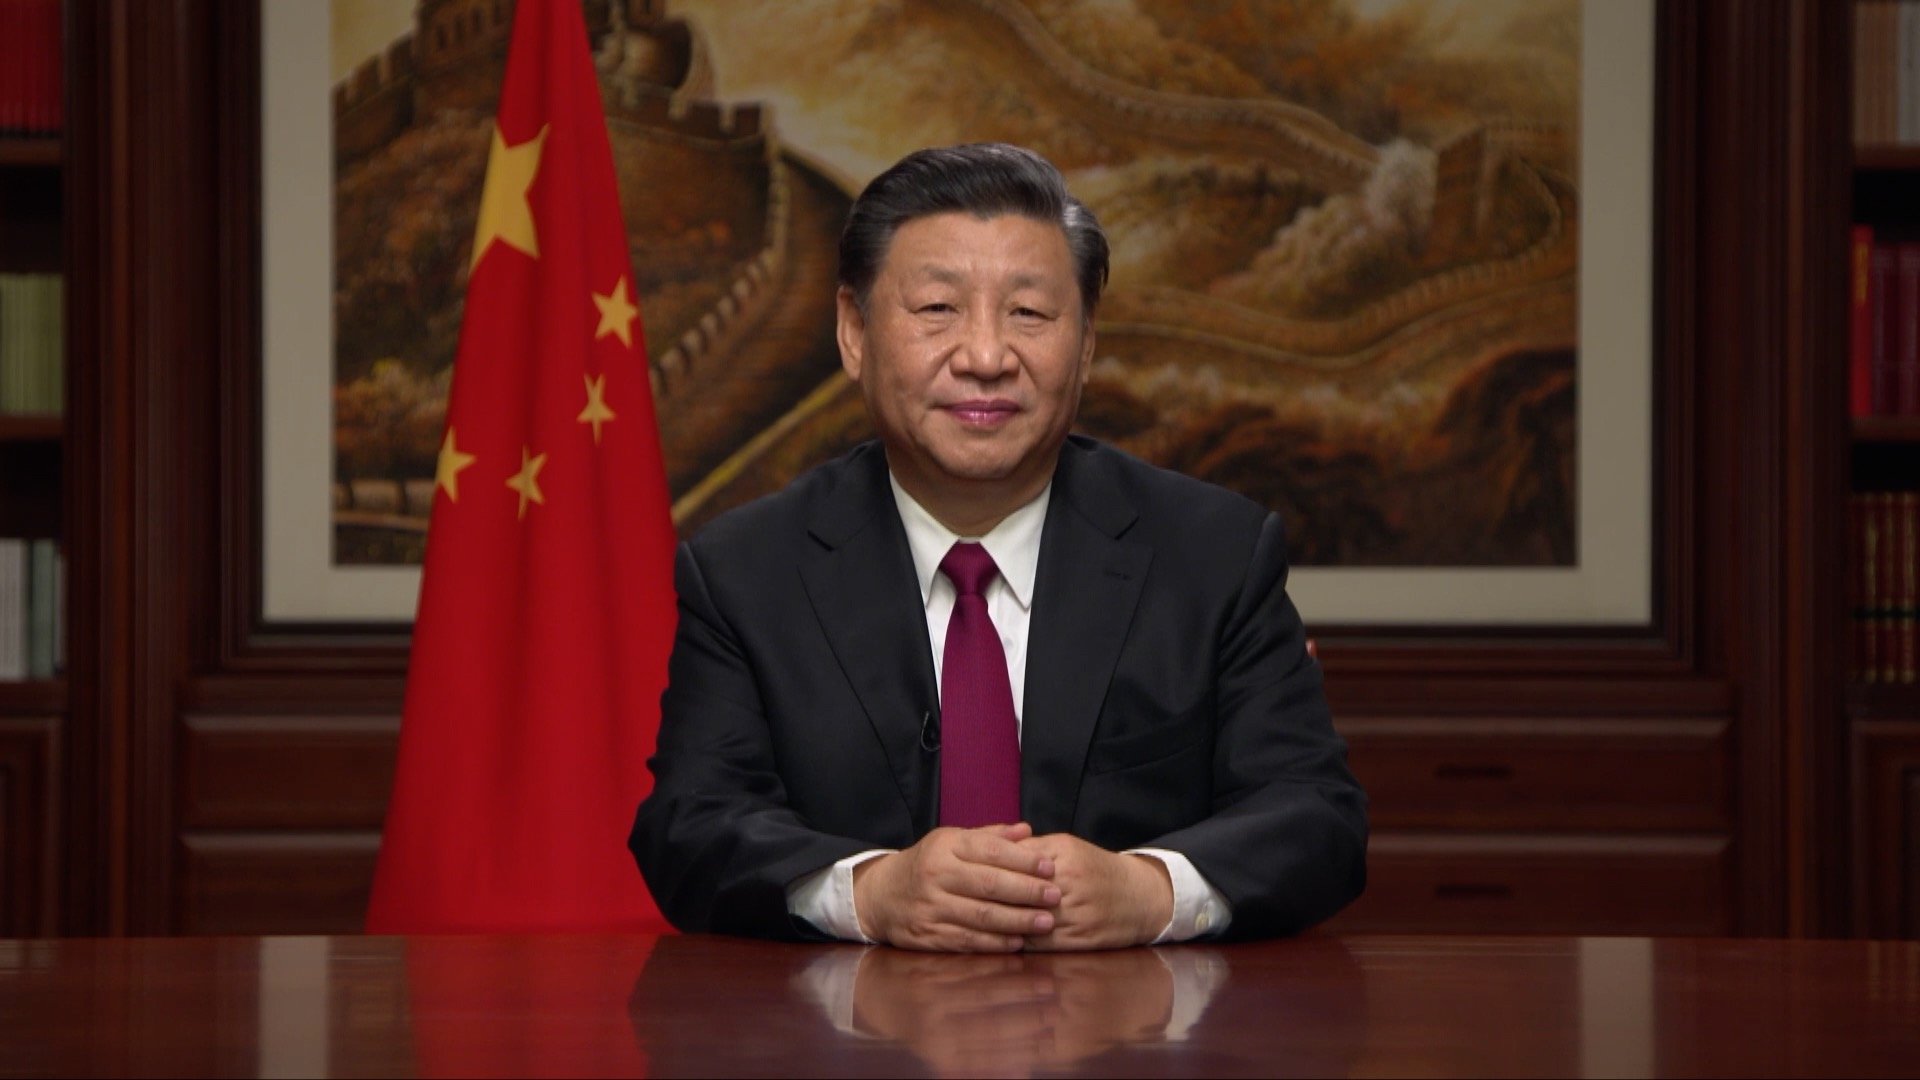  Xi Jinping, yeniden devlet başkanı seçilerek üçüncü dönemine başladı.